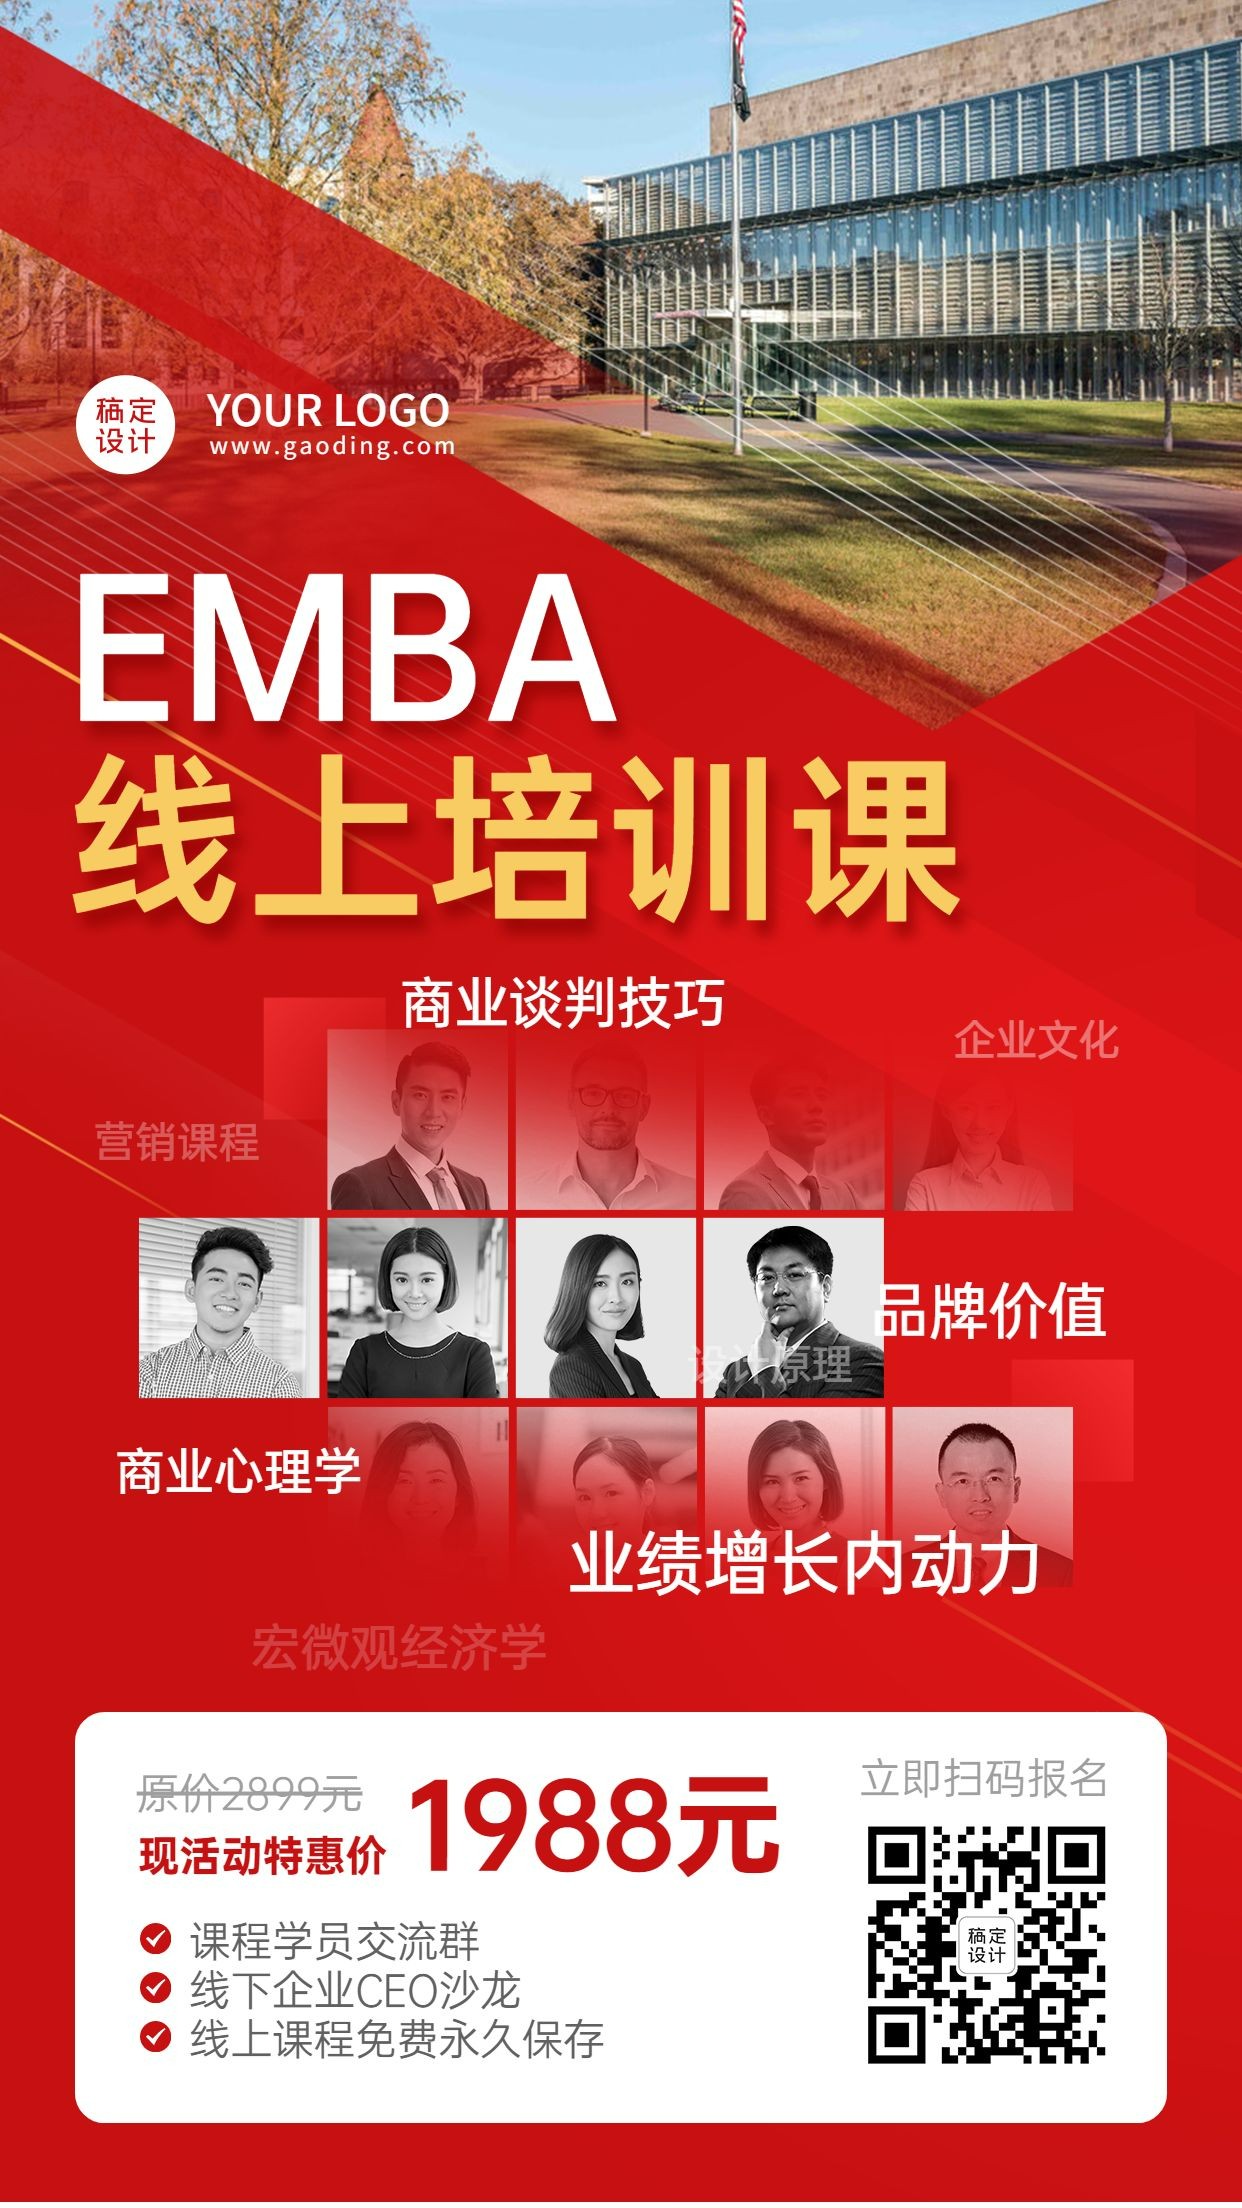 学历提升EMBA线上课程招生手机海报预览效果